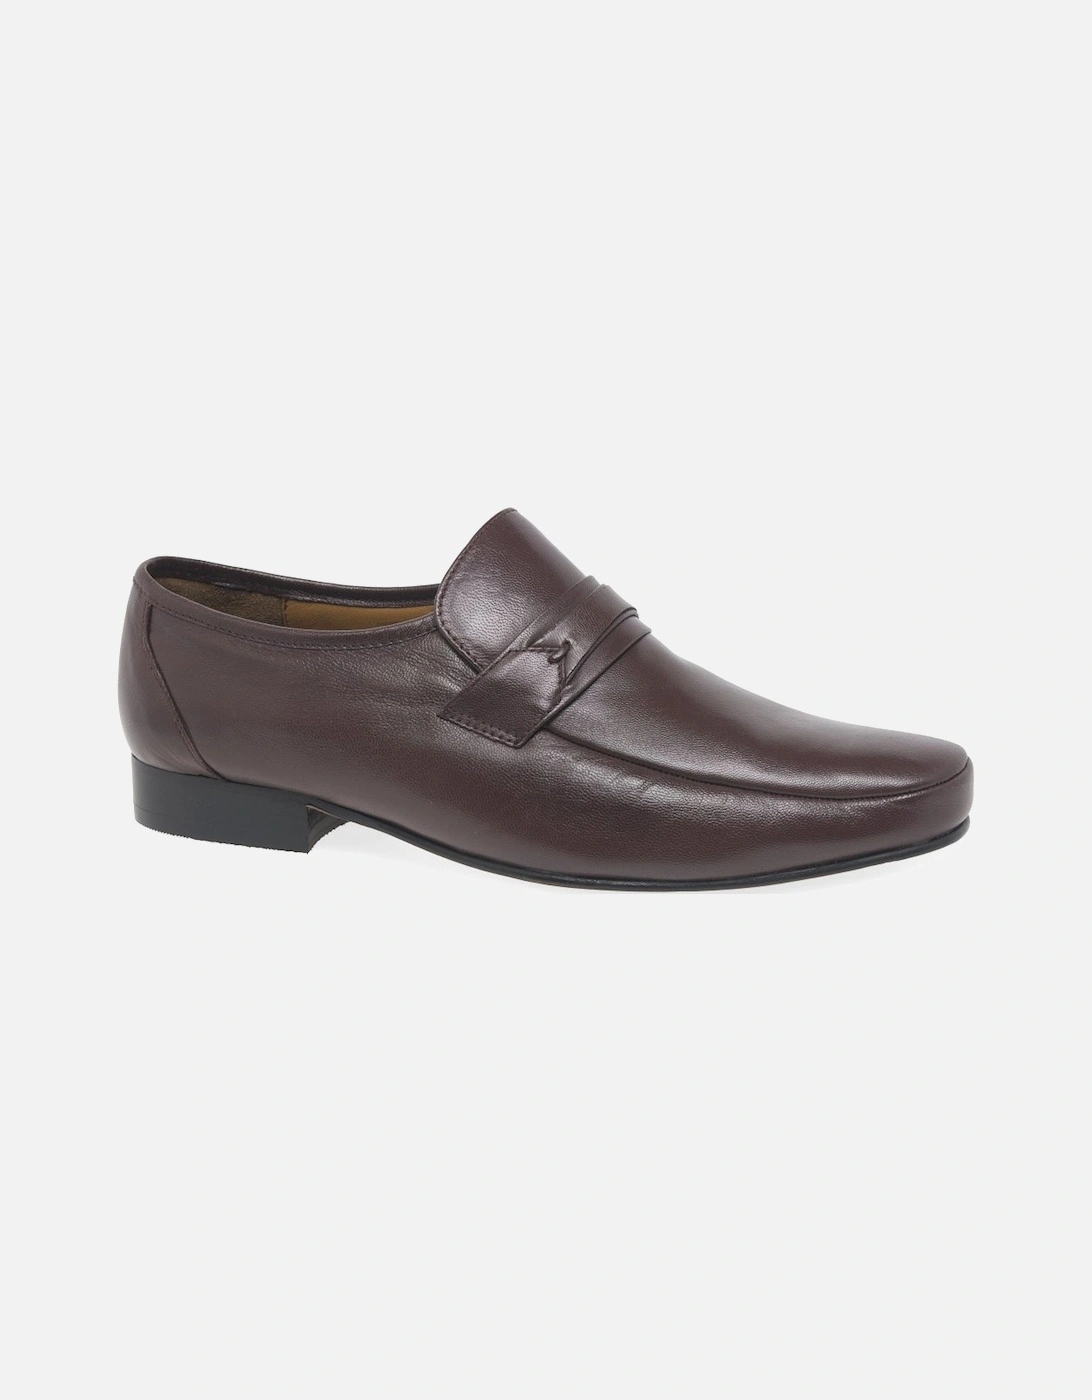 Regent Mens Slip On Formal Shoes, 9 of 8